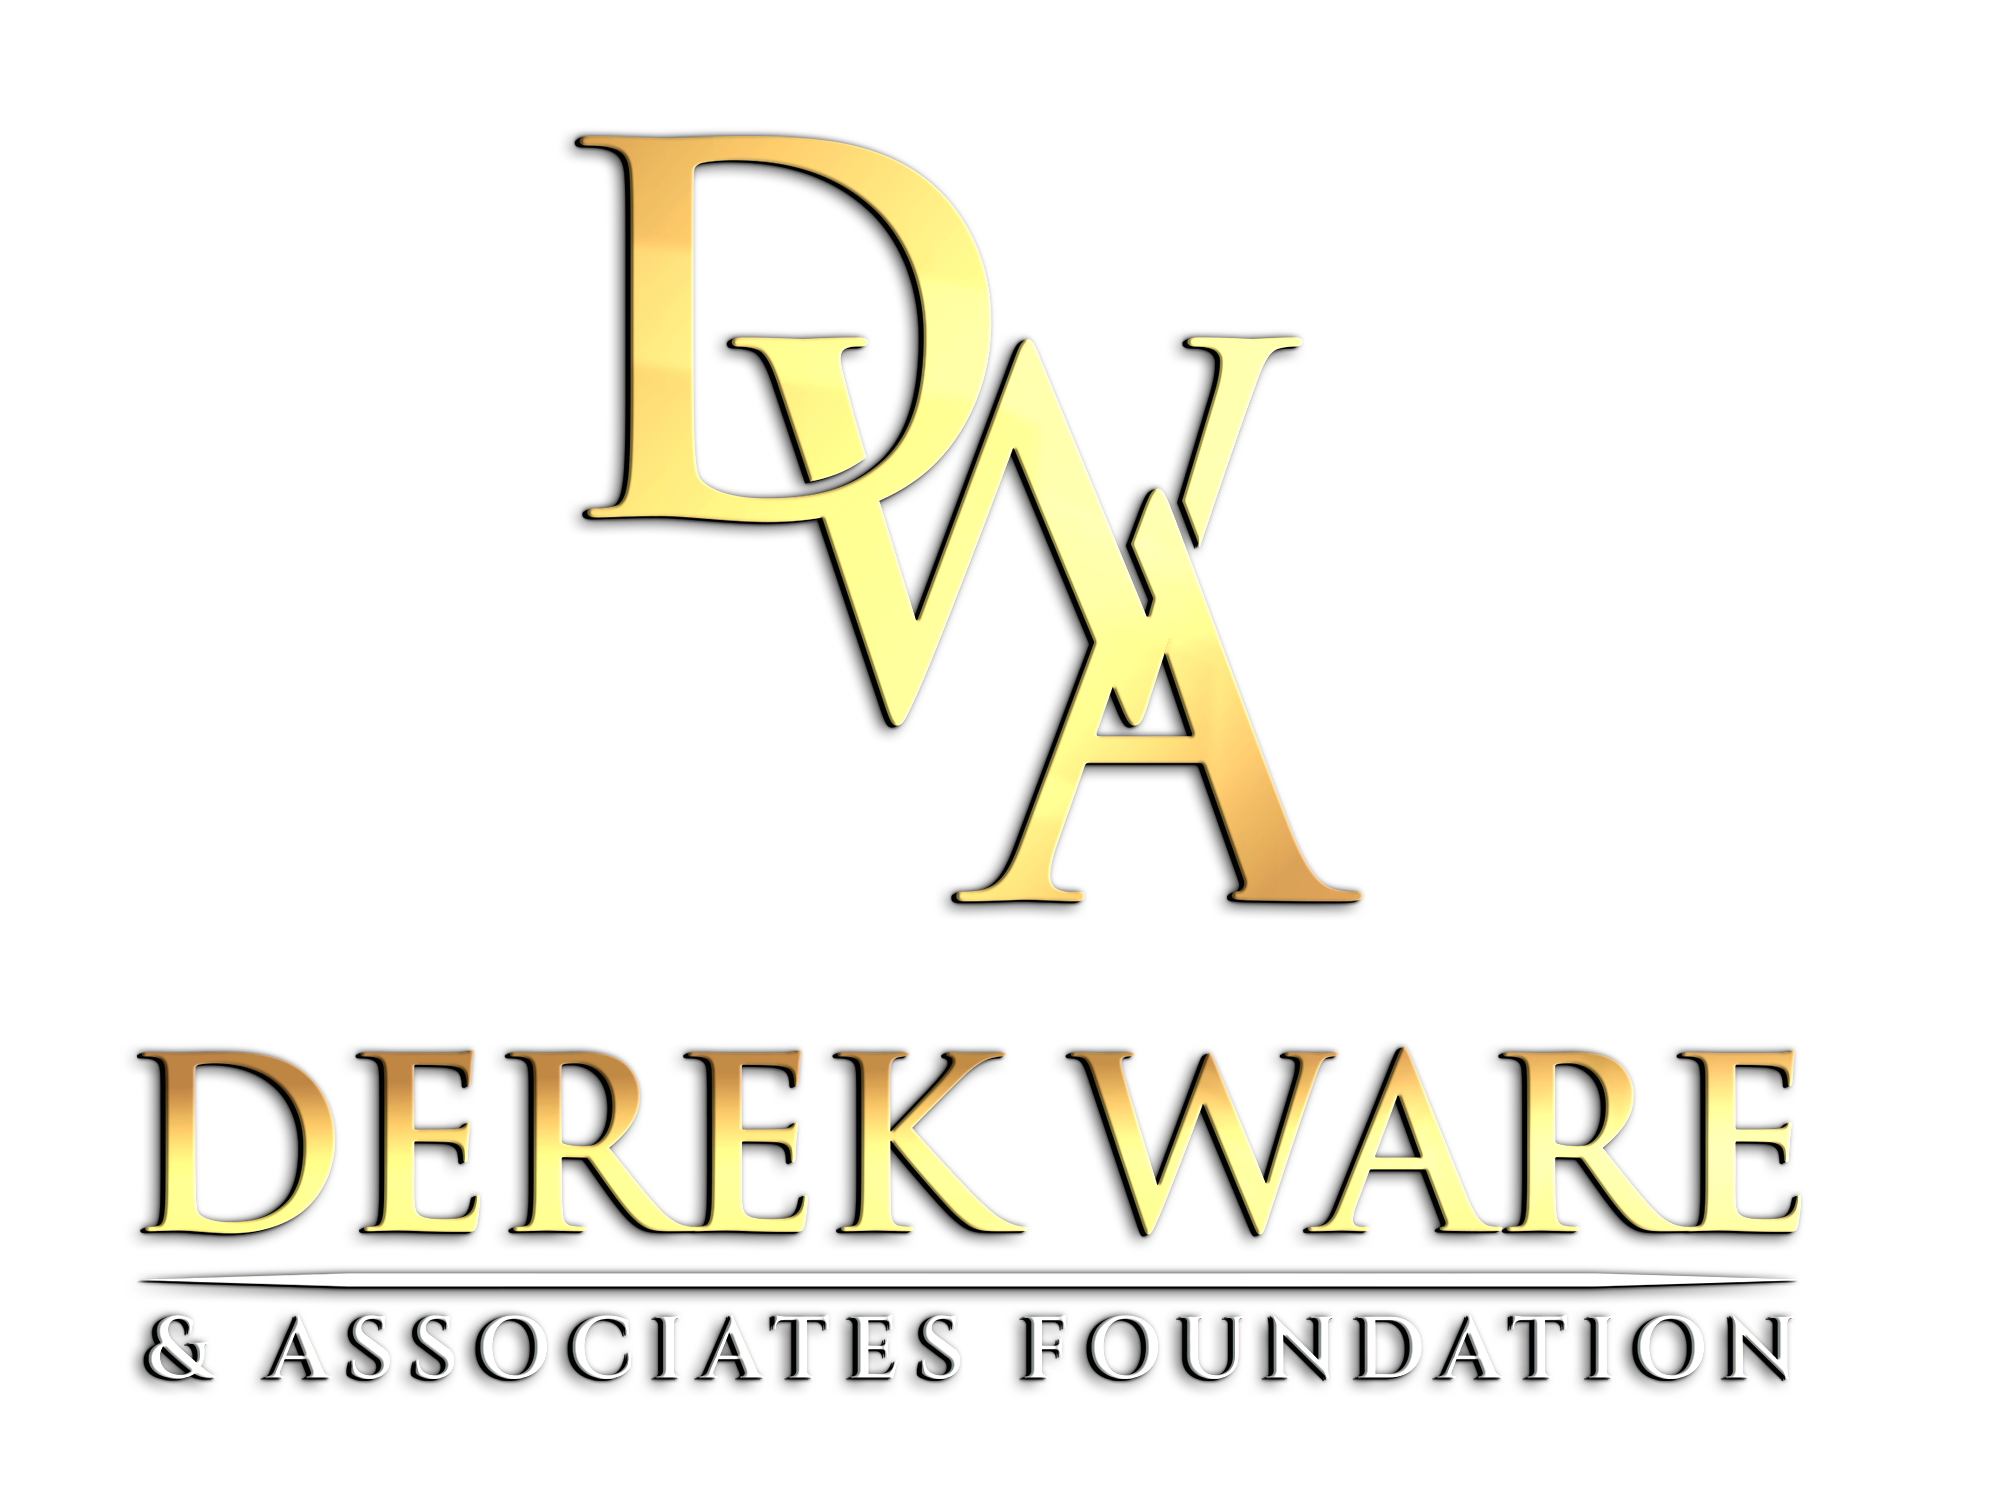 DWA Foundation